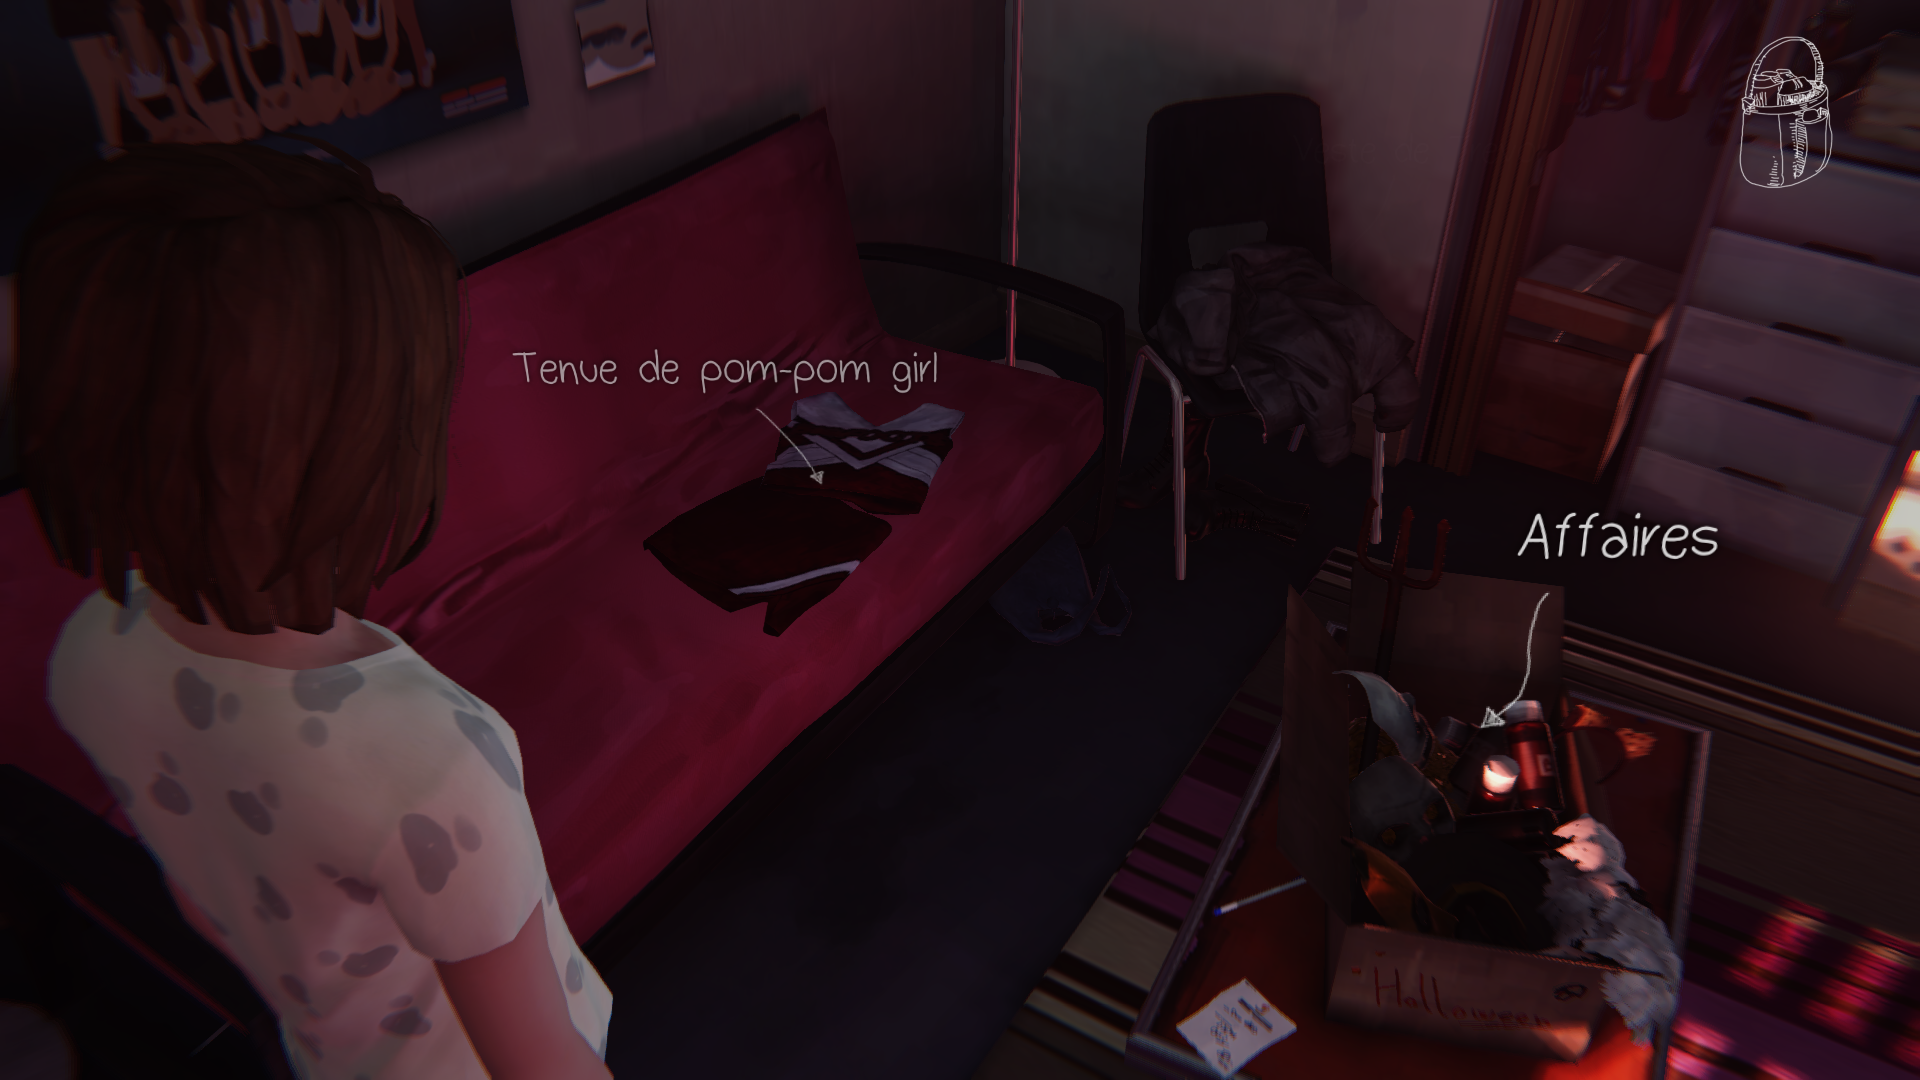 Capture d'écran du jeu vidéo Life is Strange.